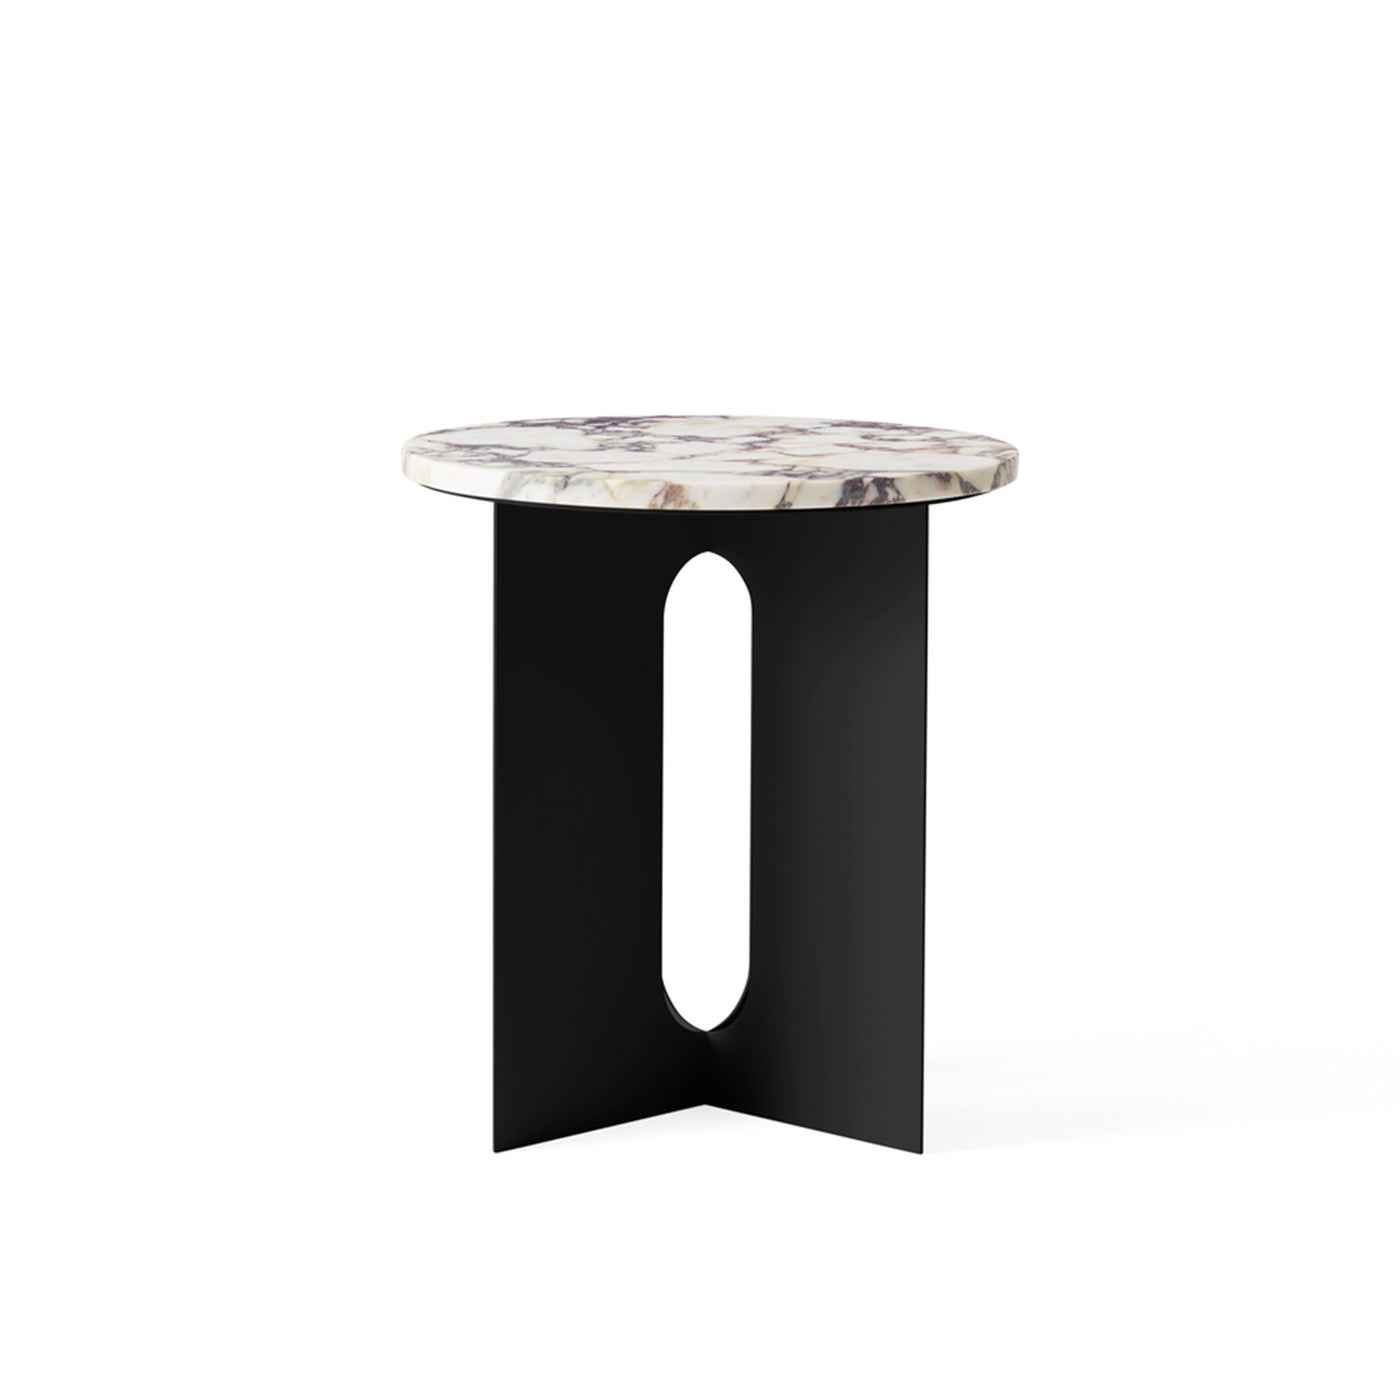 Luxusní noční stolek, skandinávský odkládací stolek do obýváku s maramorem, mramorový noční stůl od Menu, Menu space skandinávská značka